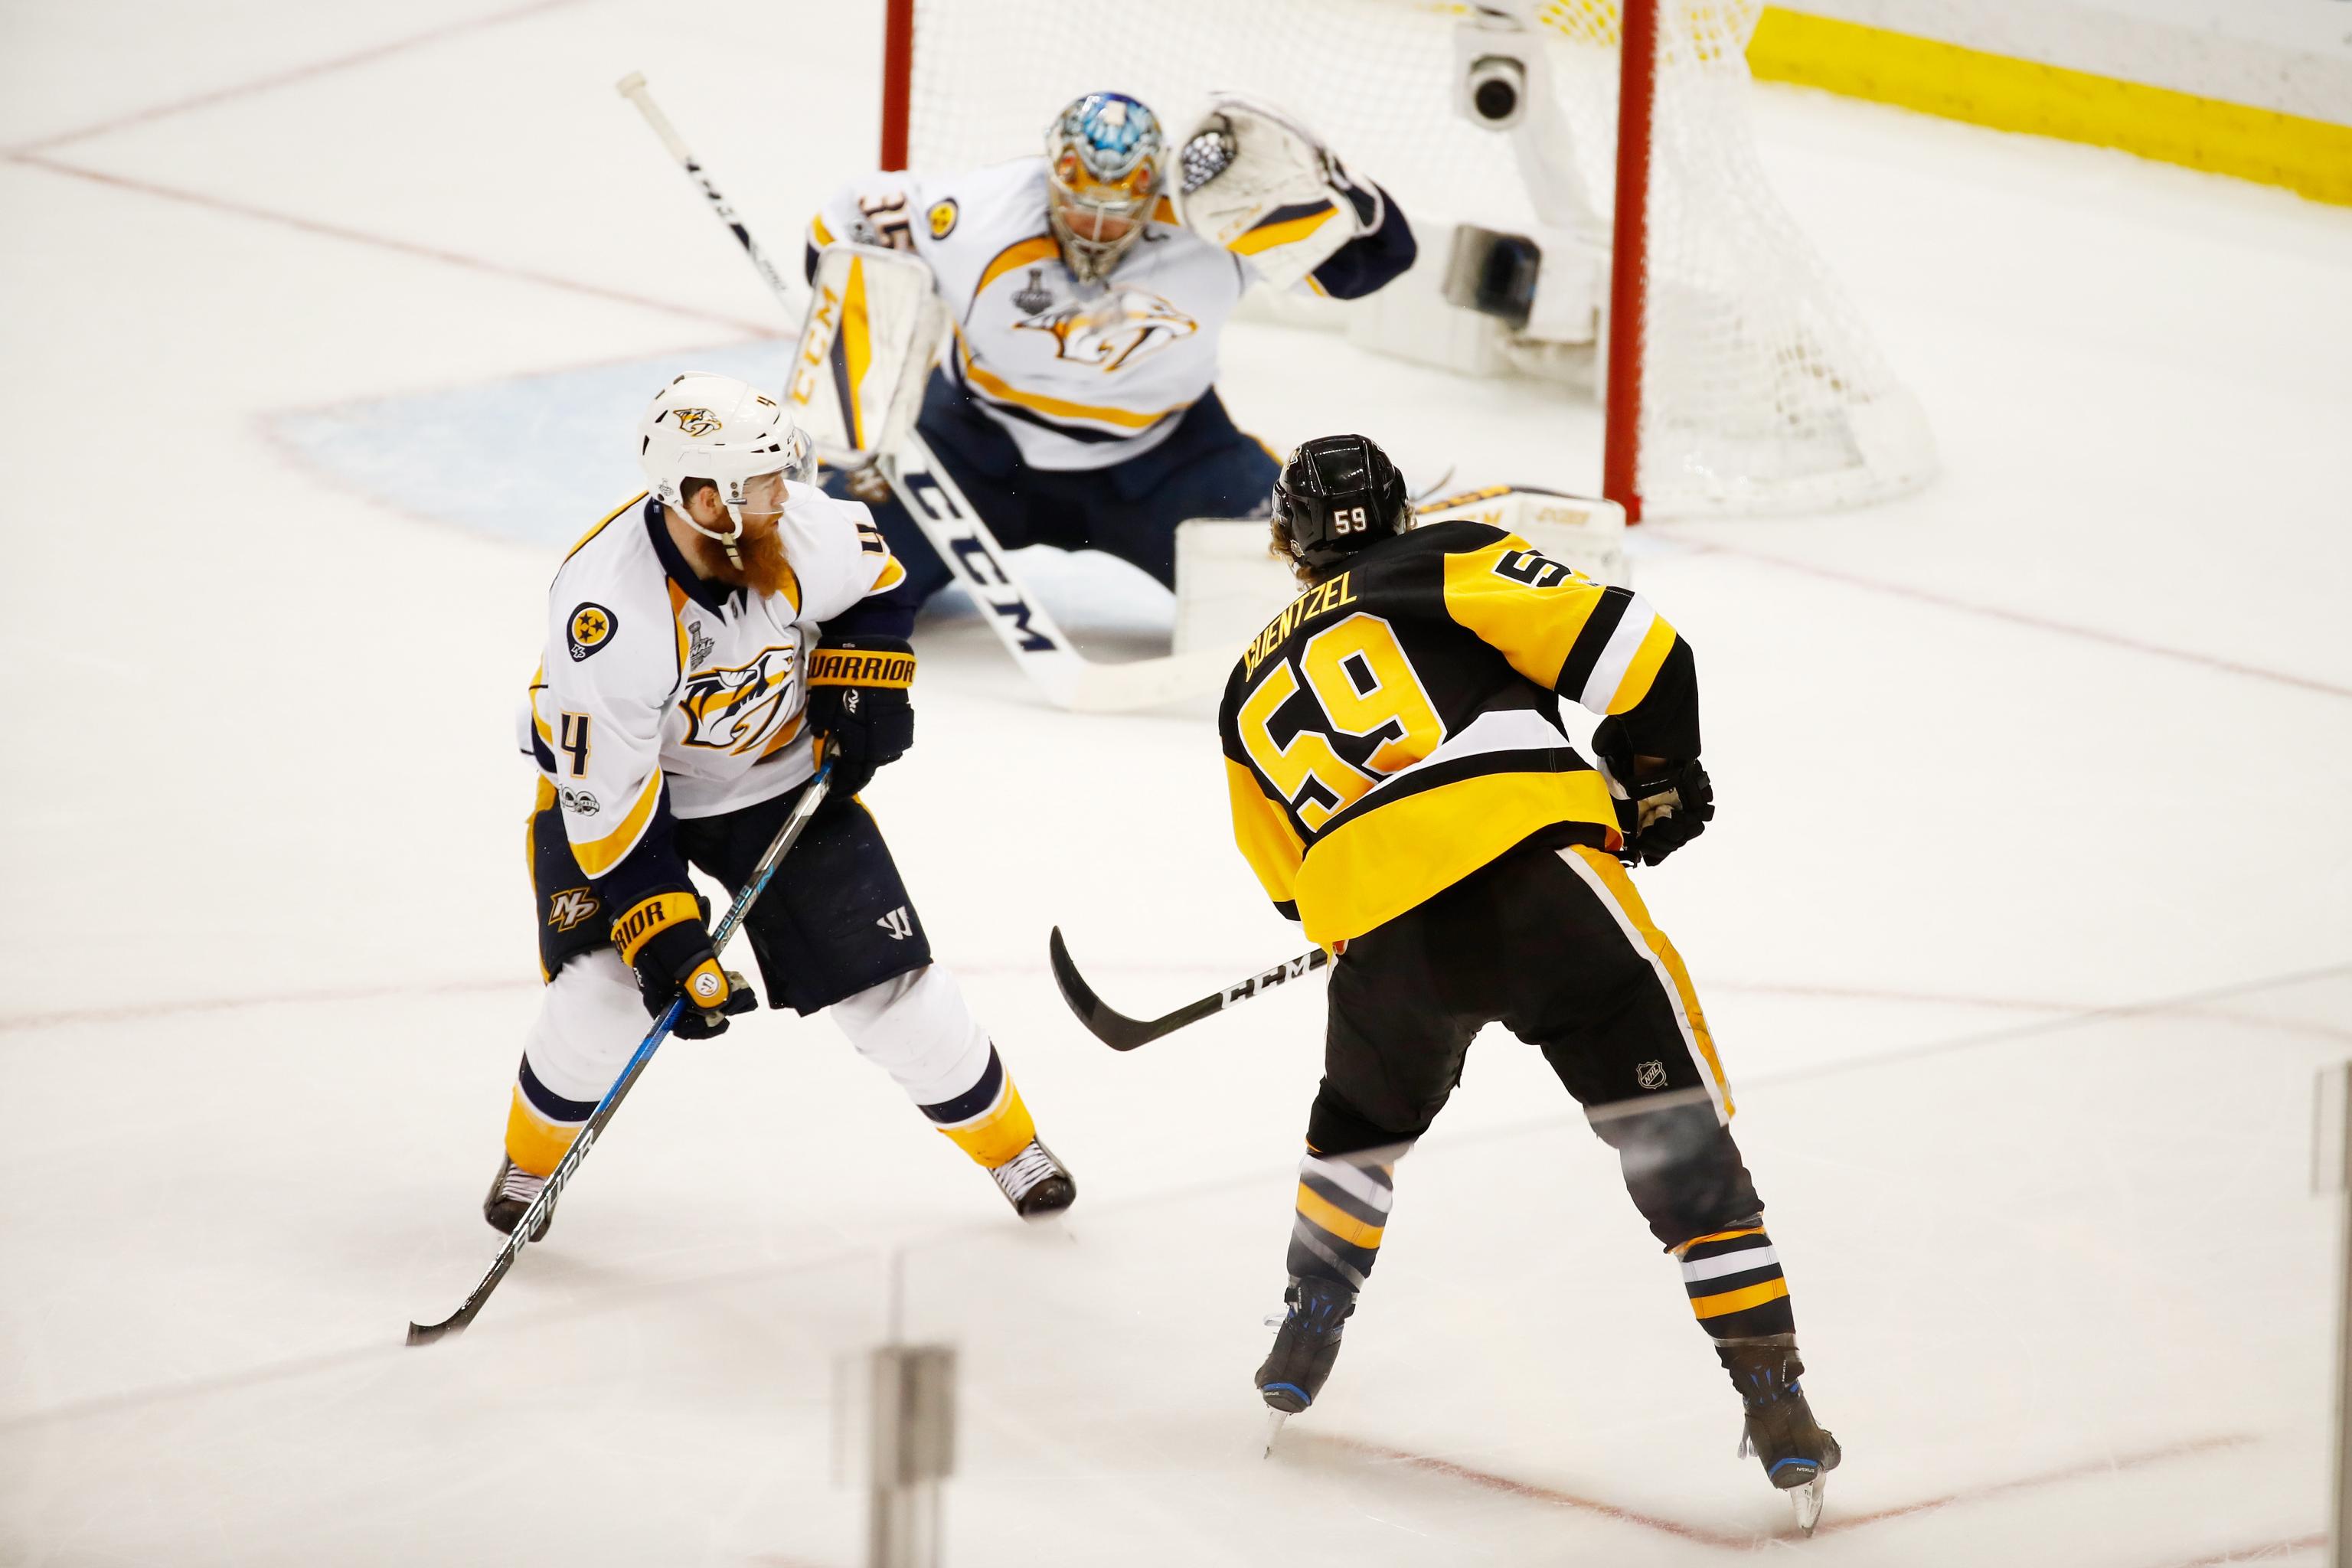 Penguins defeat Predators 5-3 in Game 1 of Stanley Cup Finals